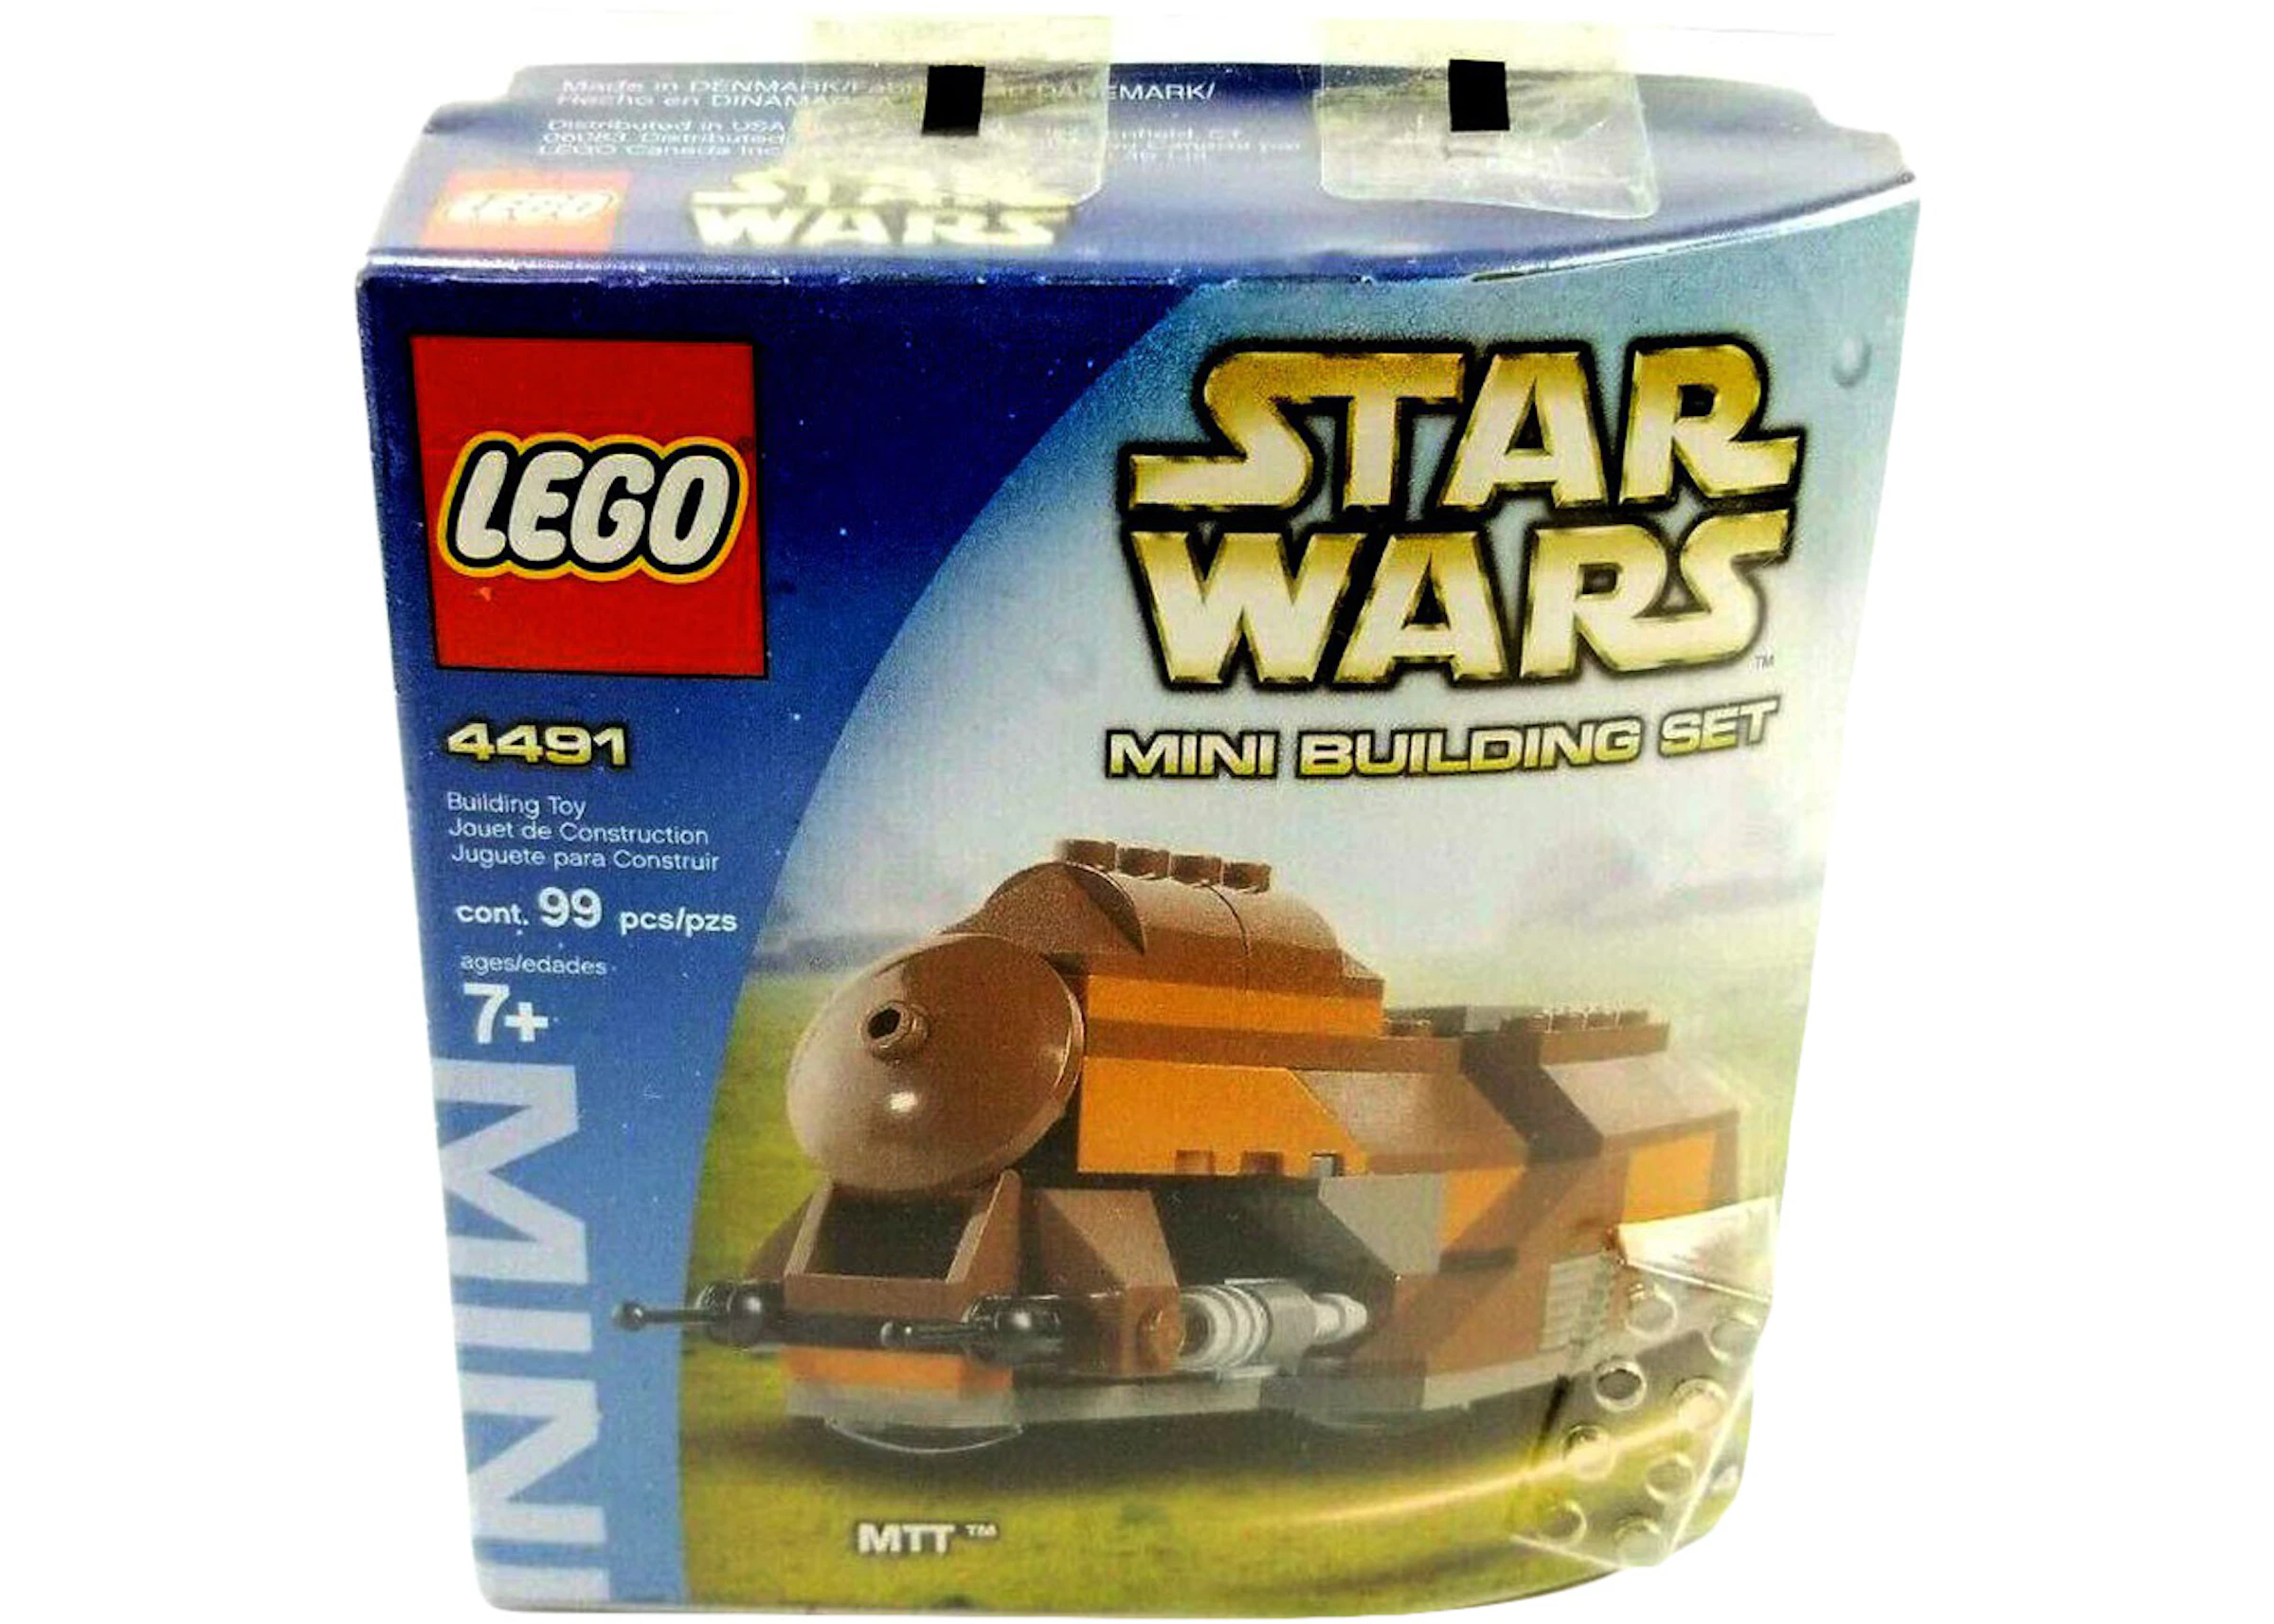 konstant anden assistent LEGO Star Wars Phantom Menace MTT Trade Federation Set 4491 - US